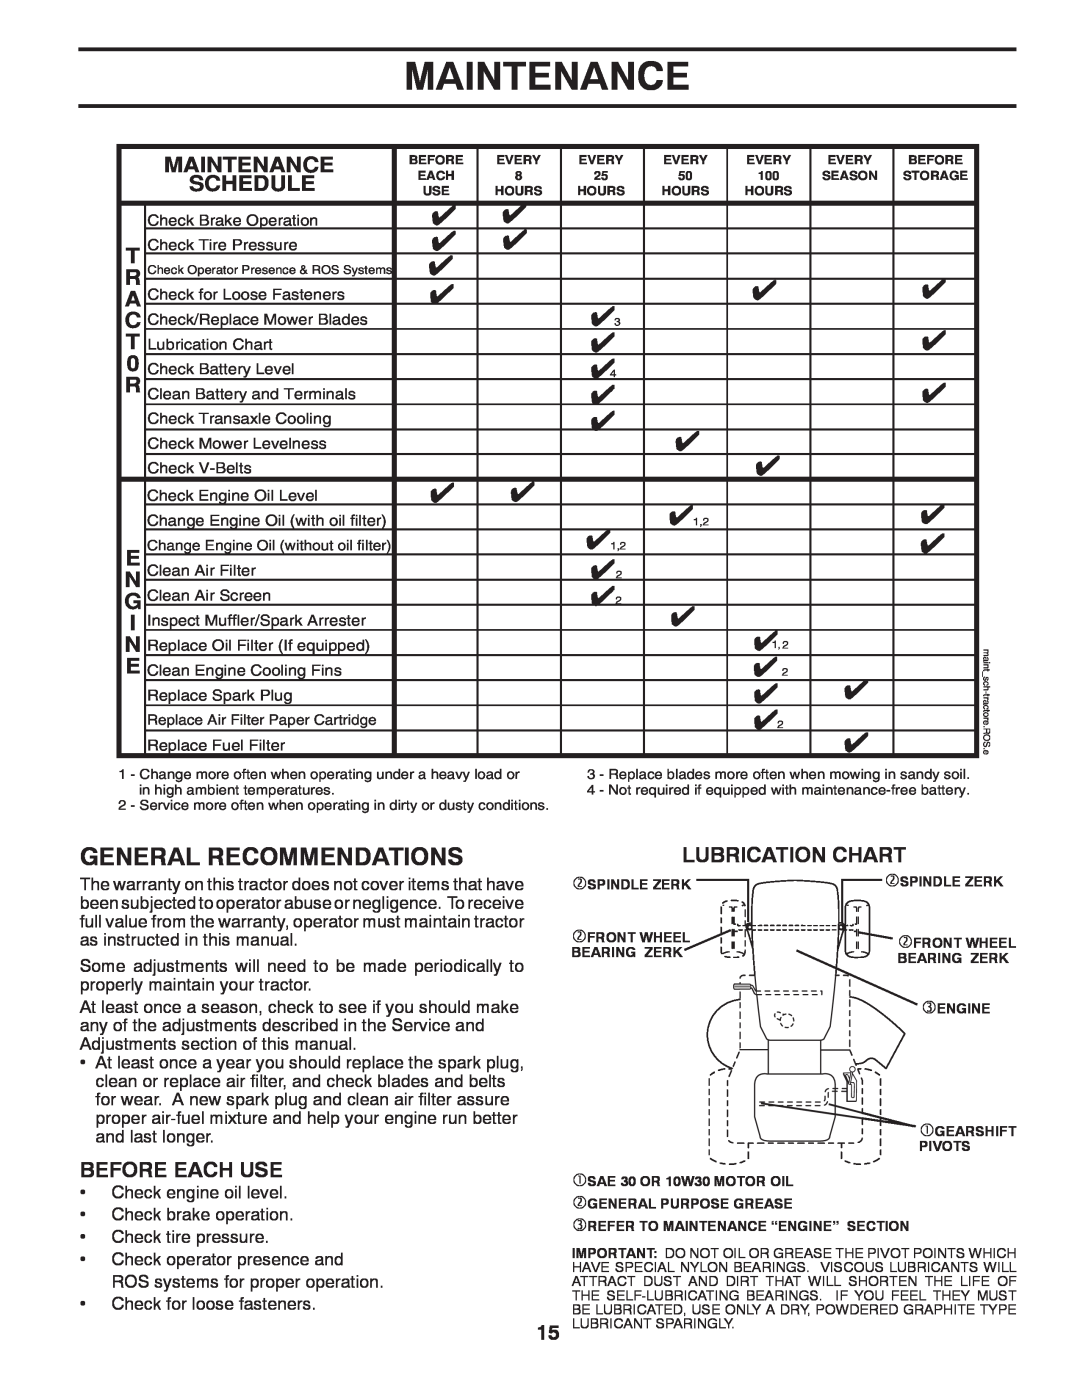 Poulan 414754, 96012006802 manual Maintenance, Lubrication Chart 